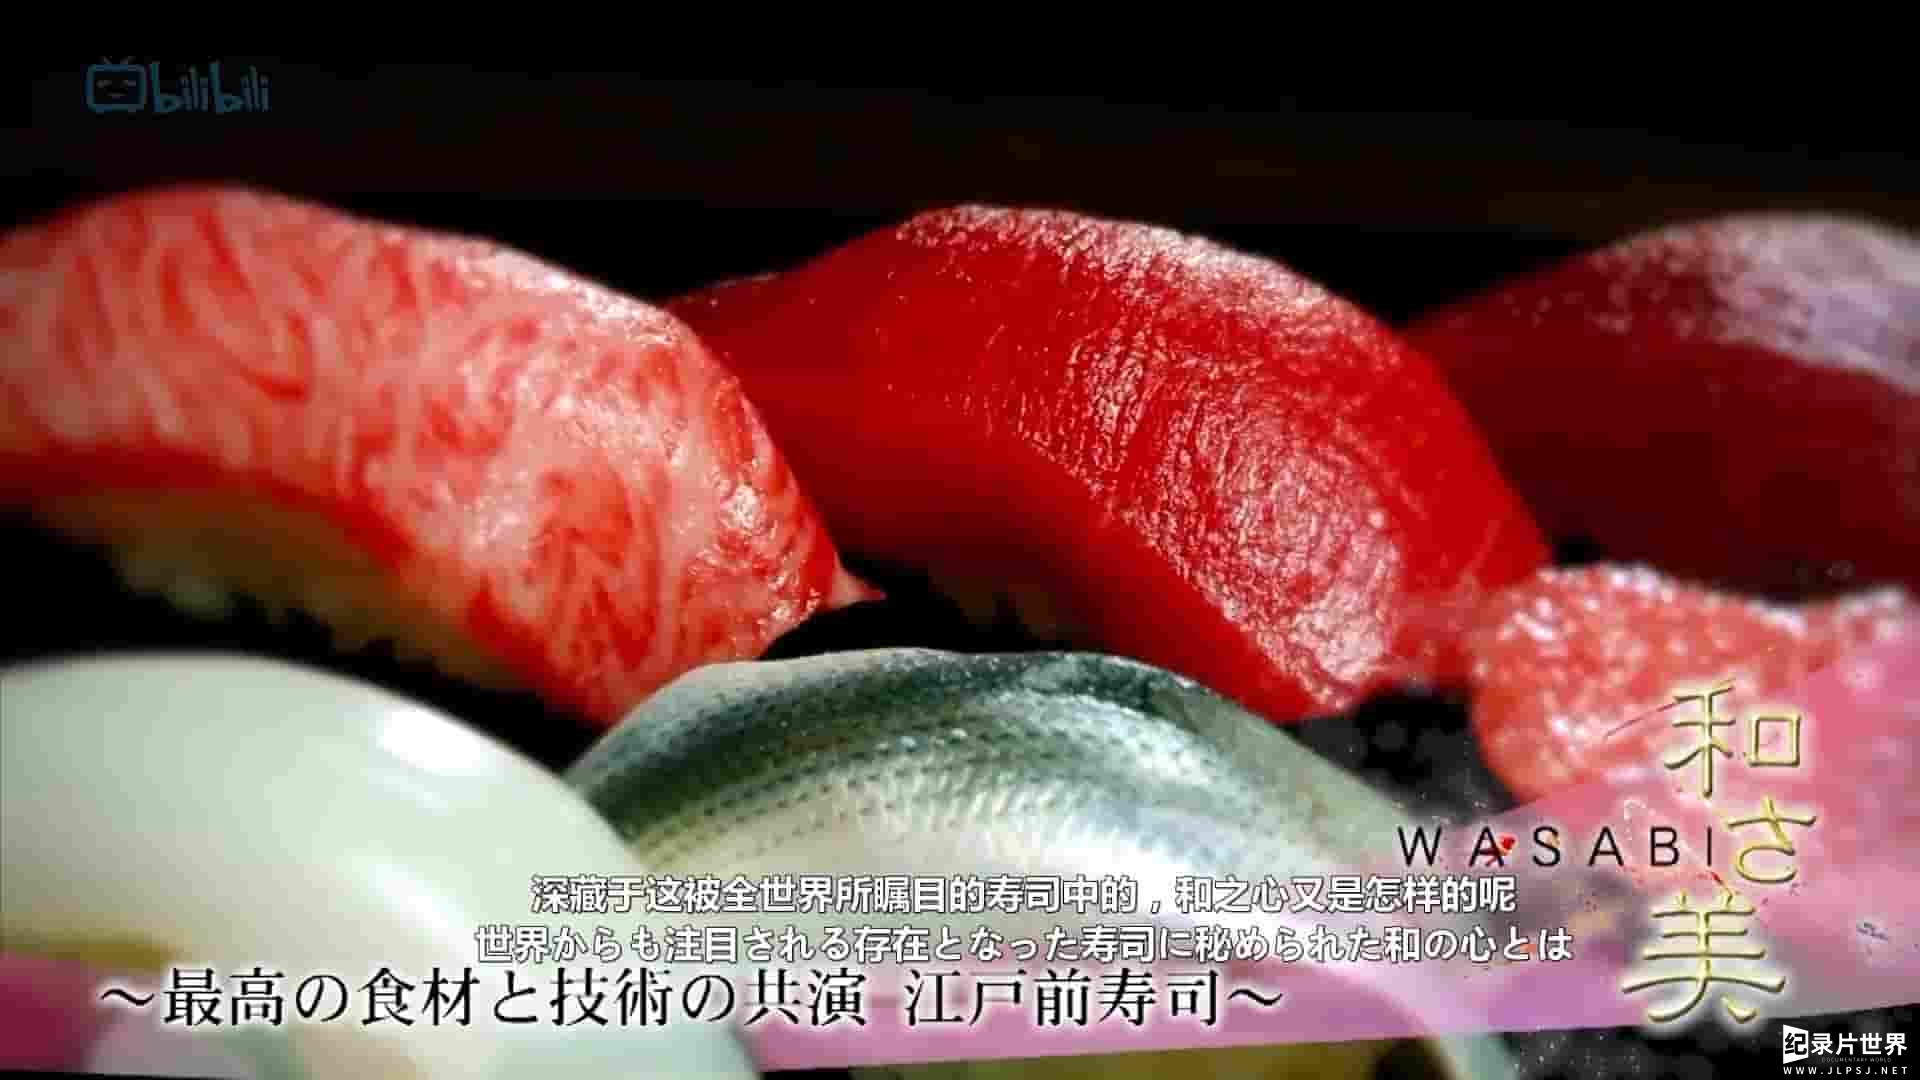  日本纪录片《和之美 Wasabi 2015》全17集